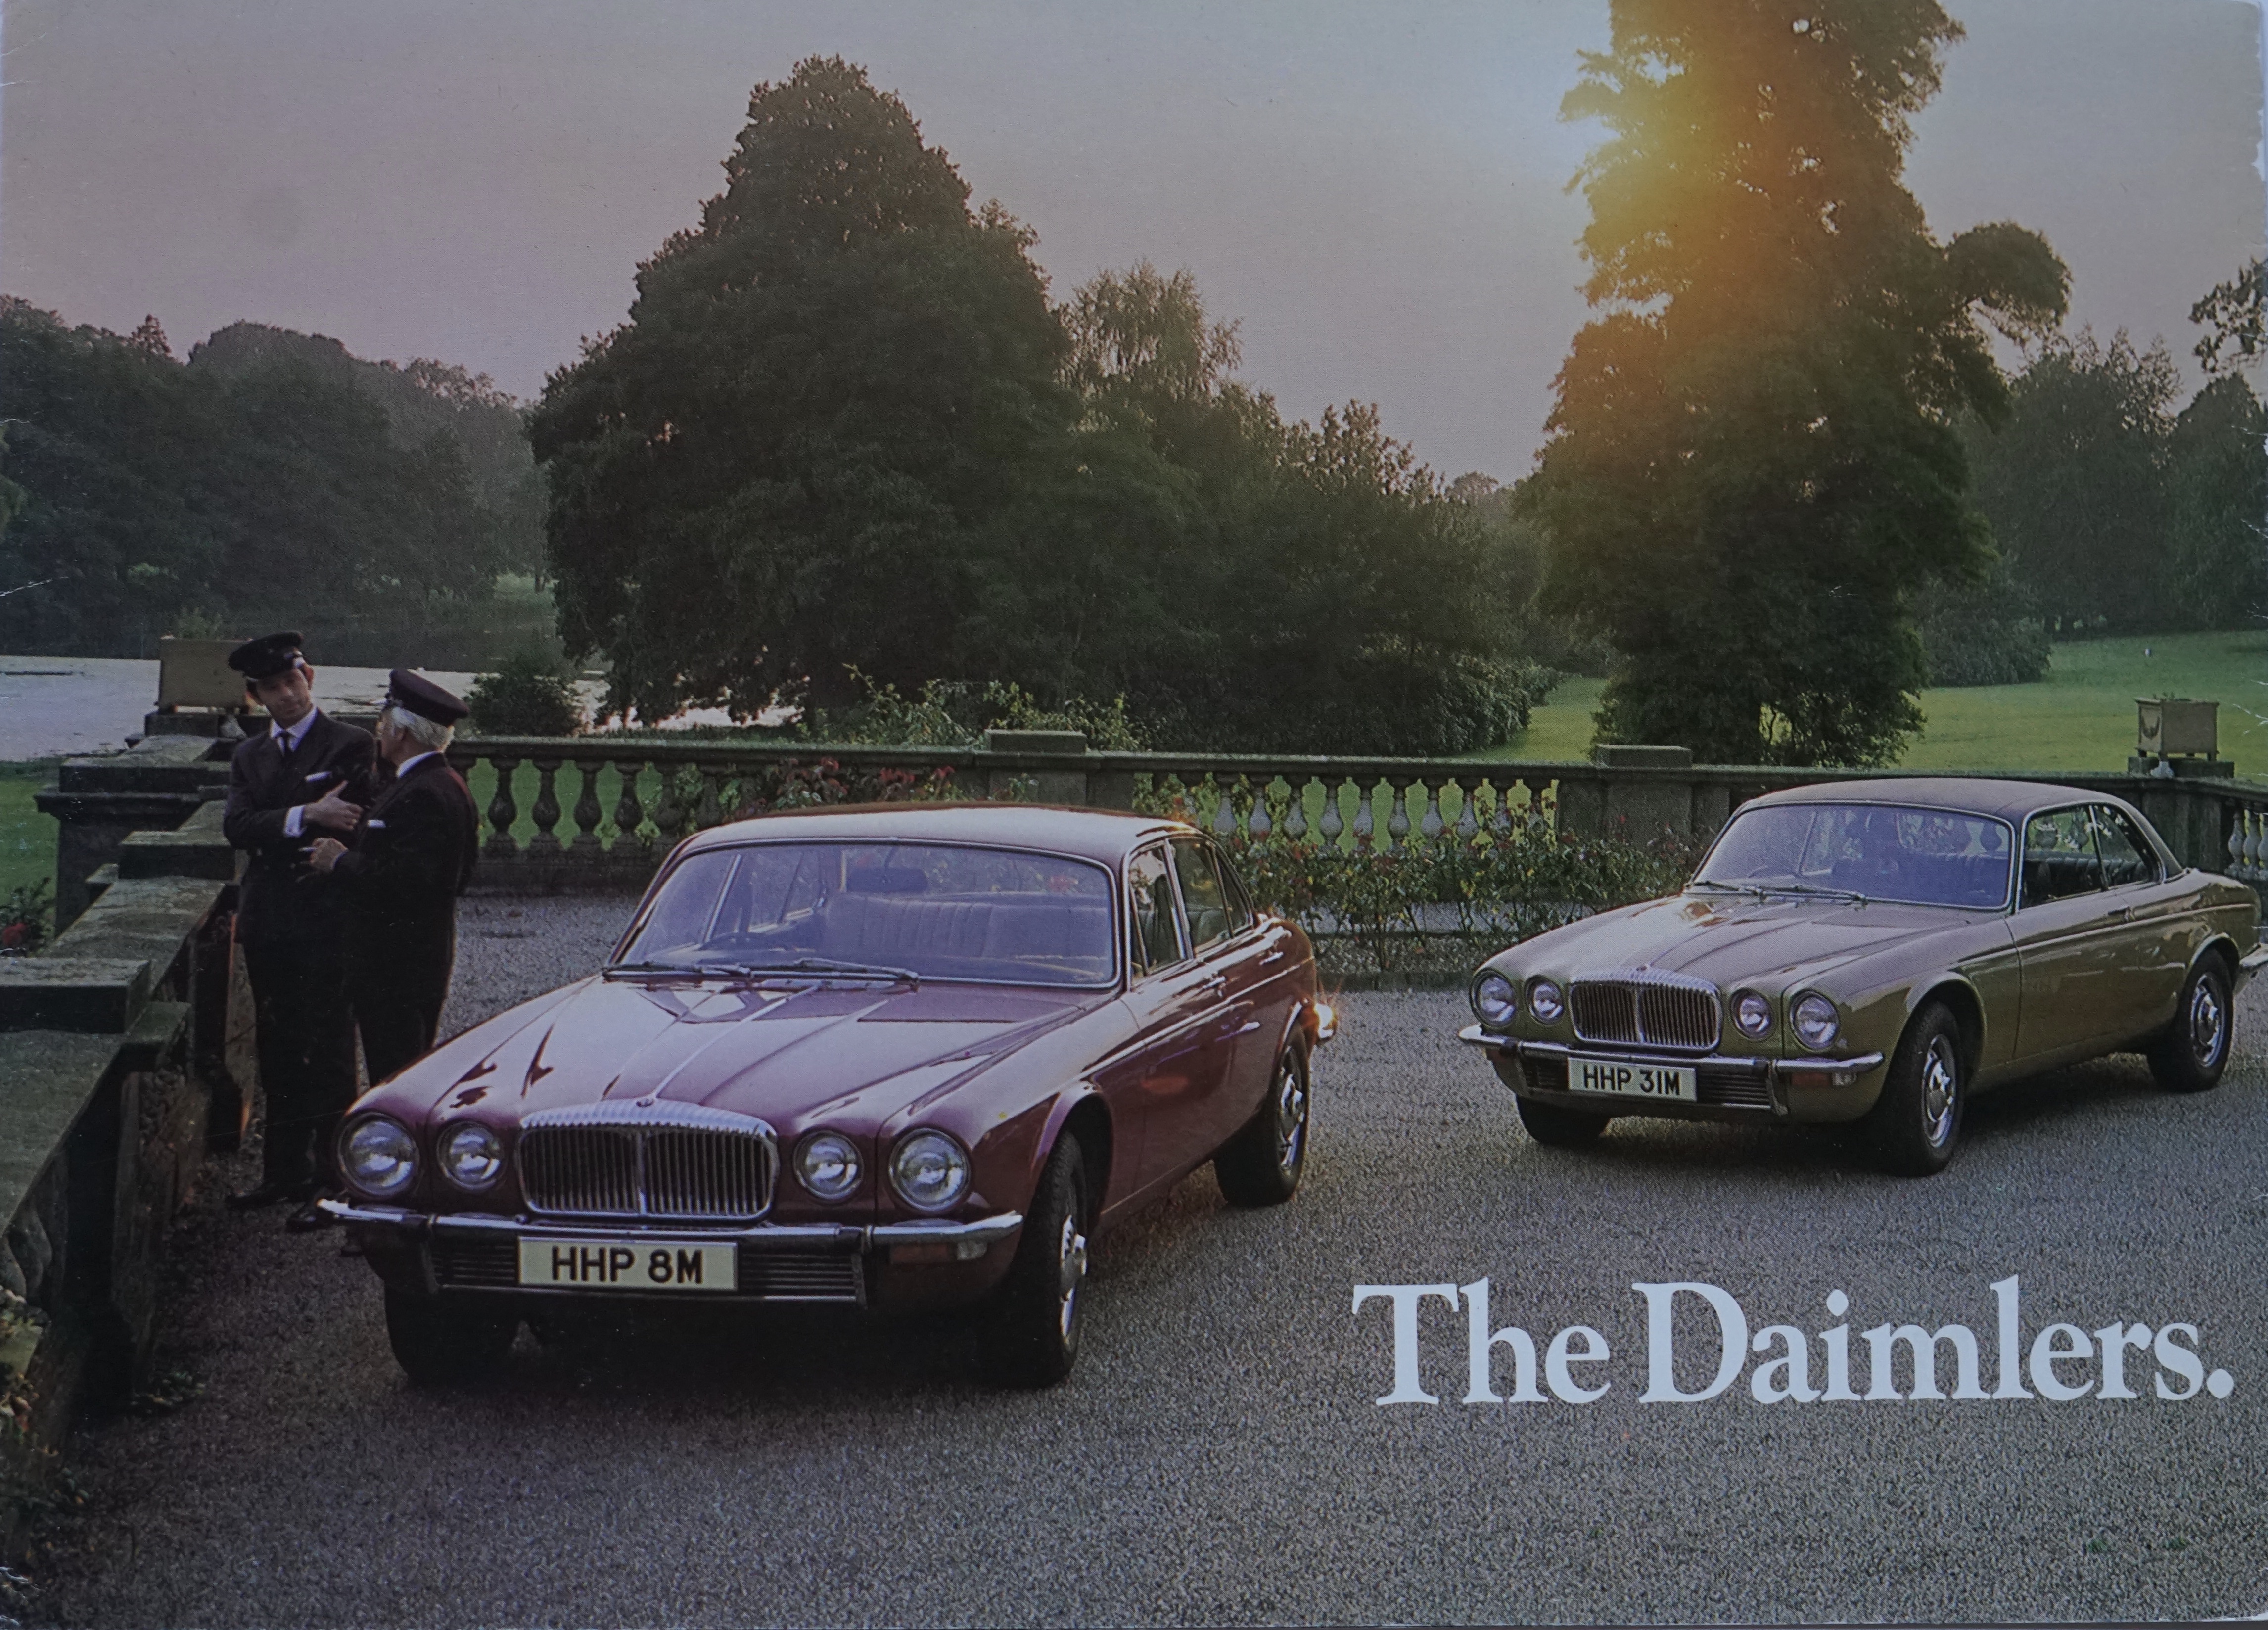 The Daimler in Colour